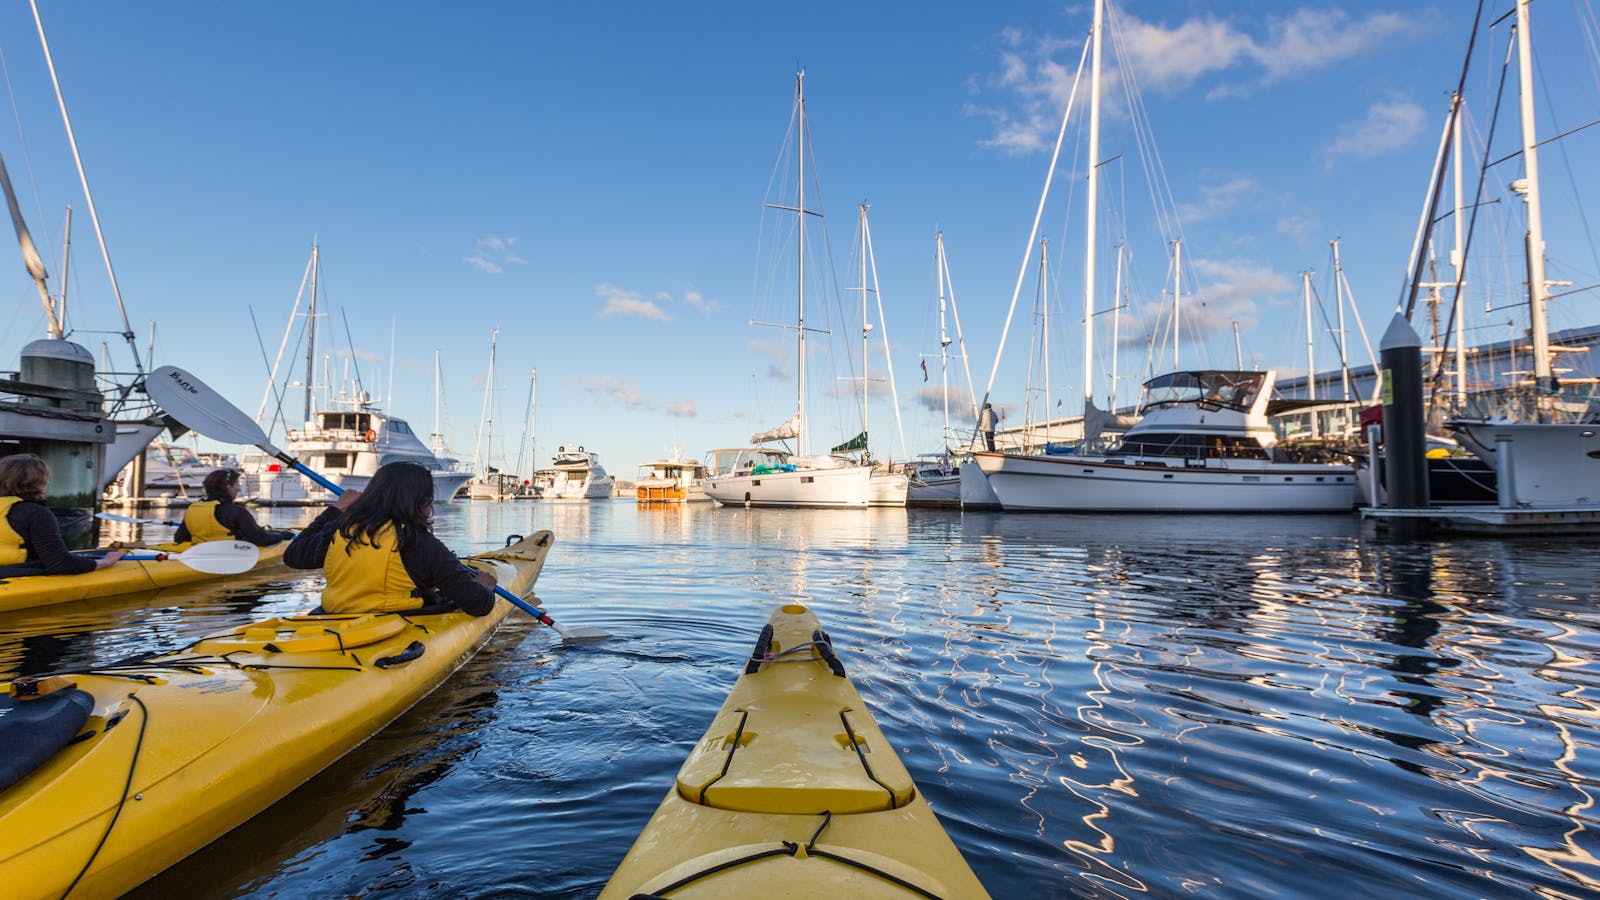 Kayakers in the Hobart Docks